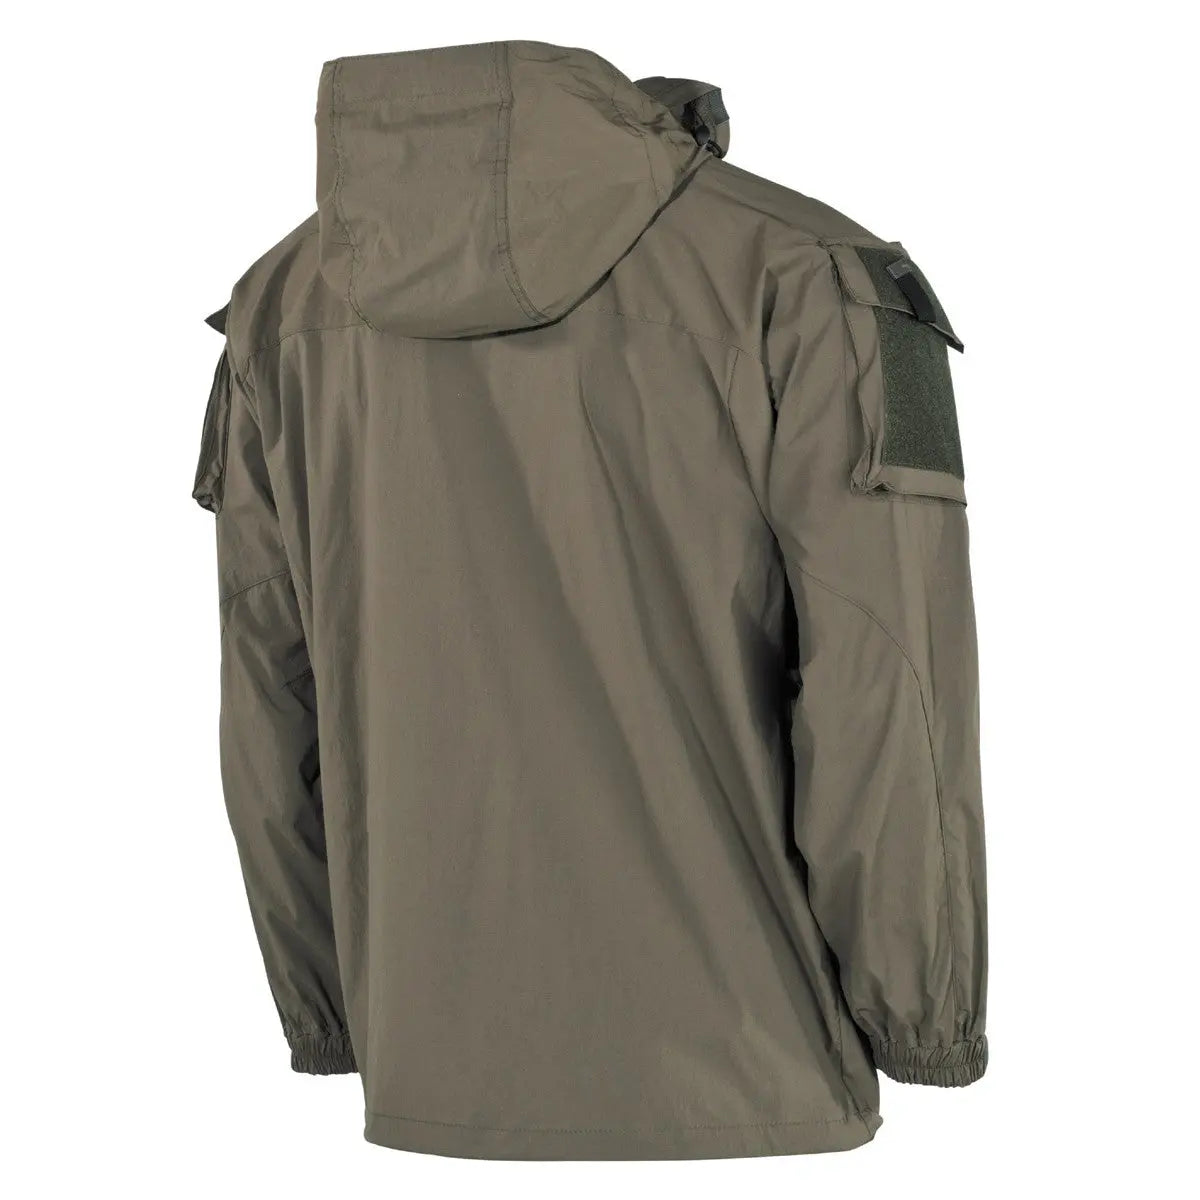 US Soft Shell Jacket, OD green GEN III, Level 5 NSO Gear